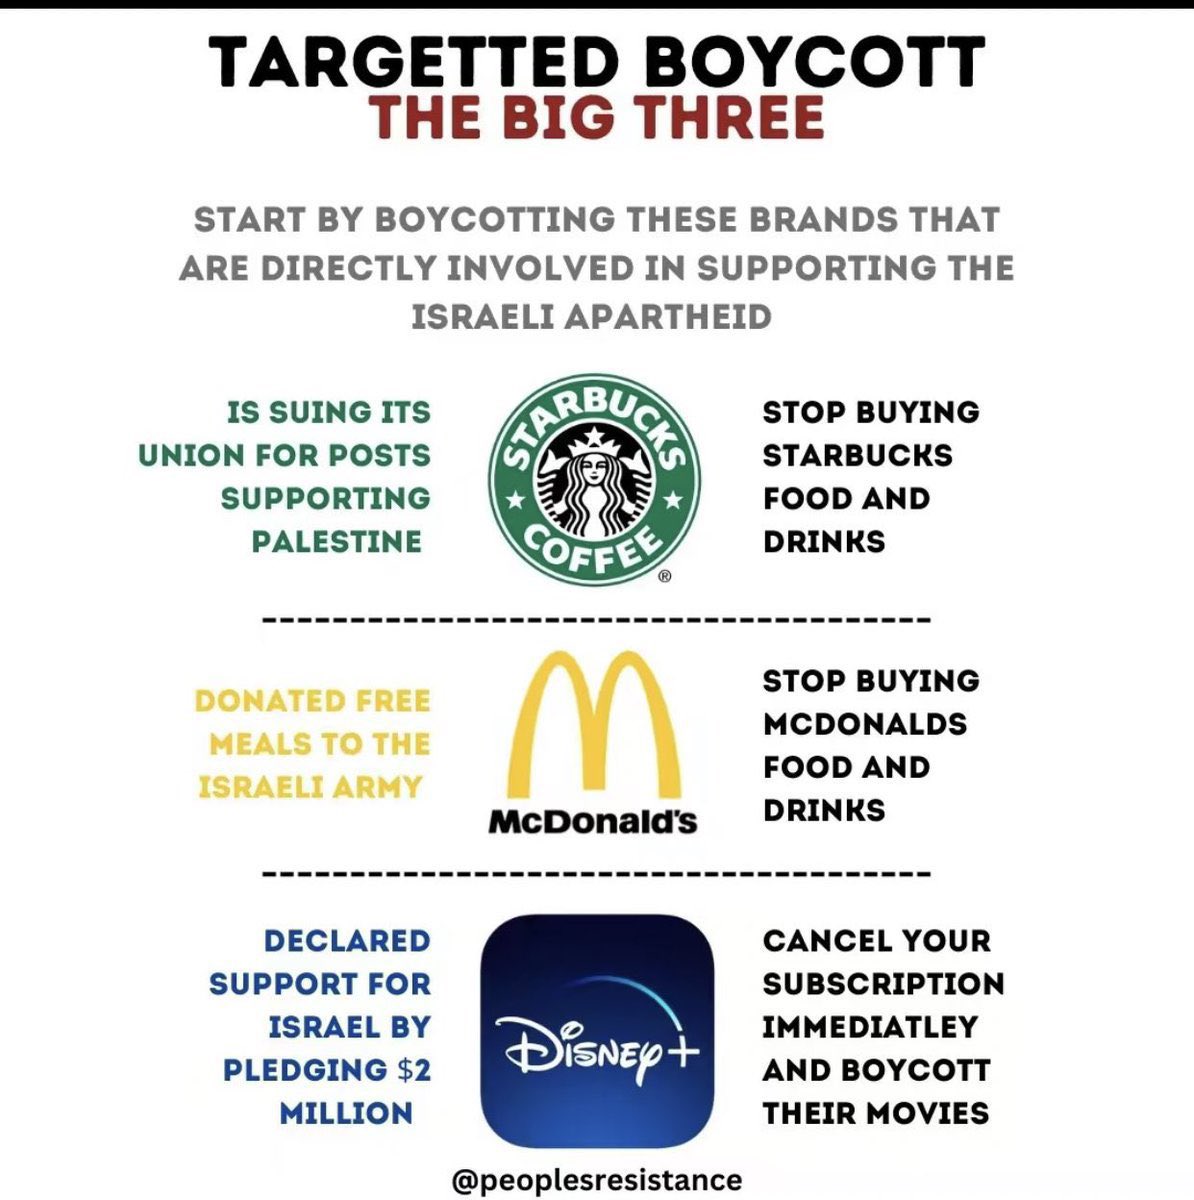 anyways, i’ll just put it here.

#BoycottStarbucks
#BoycottMcDonalds 
#BoycottDisney
#FreePalestine